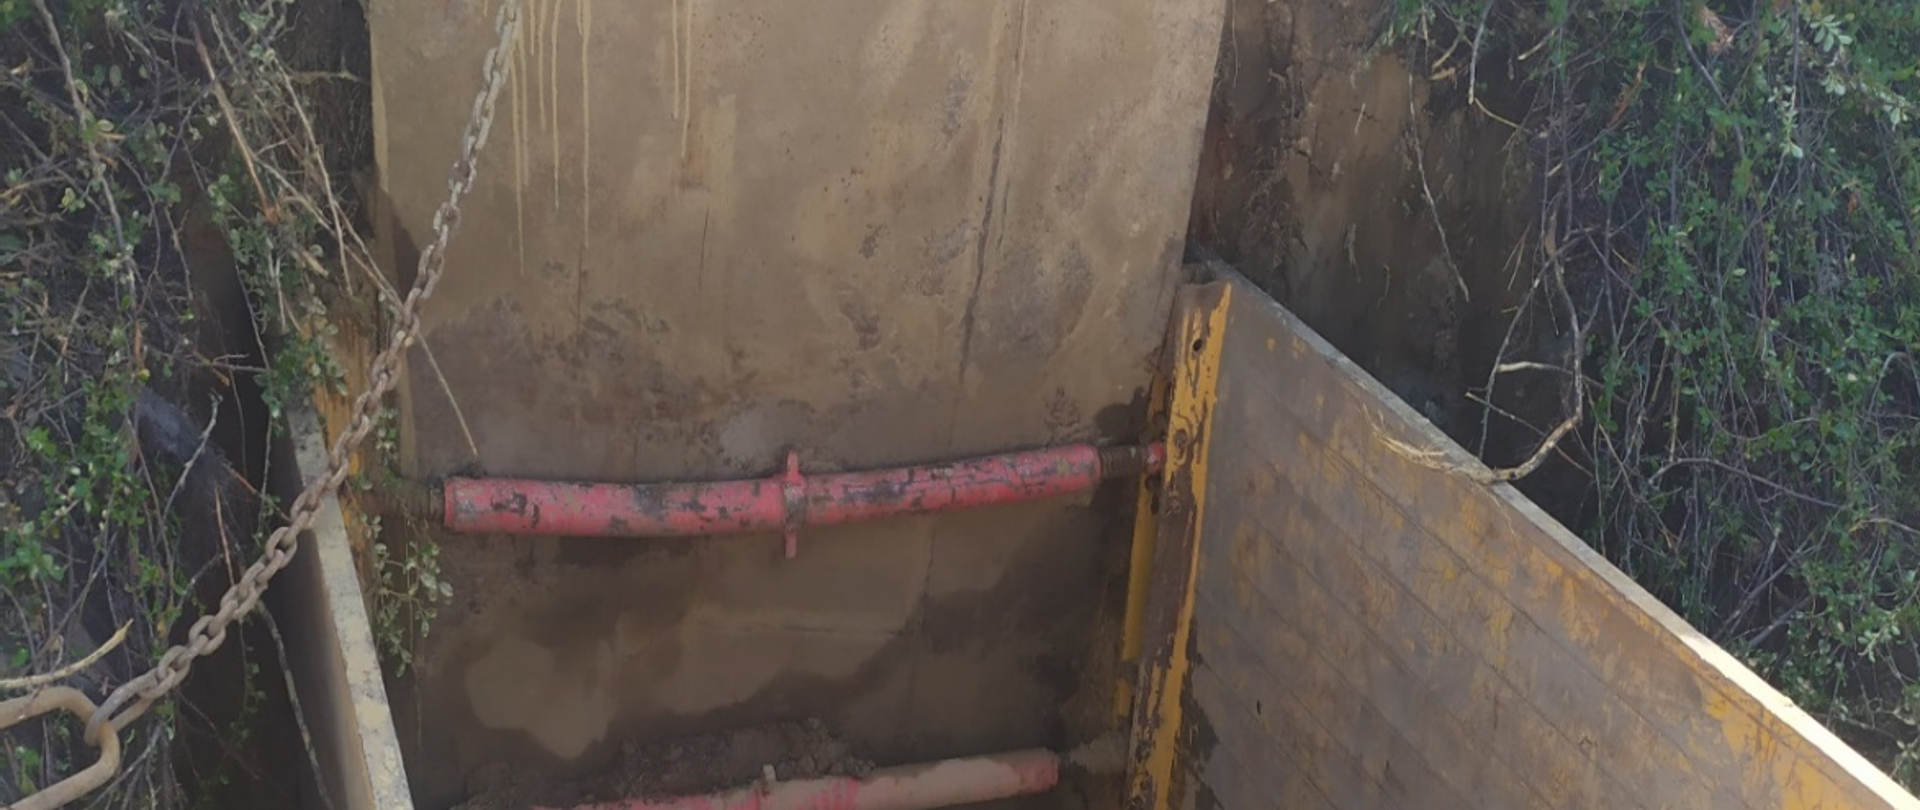 Przekroczenia kanalizacją sanitarną pod torami kolejowymi PKP. Wykonanie kanalizacji sanitarnej metodą bez wykopową pod torami kolejowymi w Rokicinach Podhalańskich i w Rabie Wyżnej.